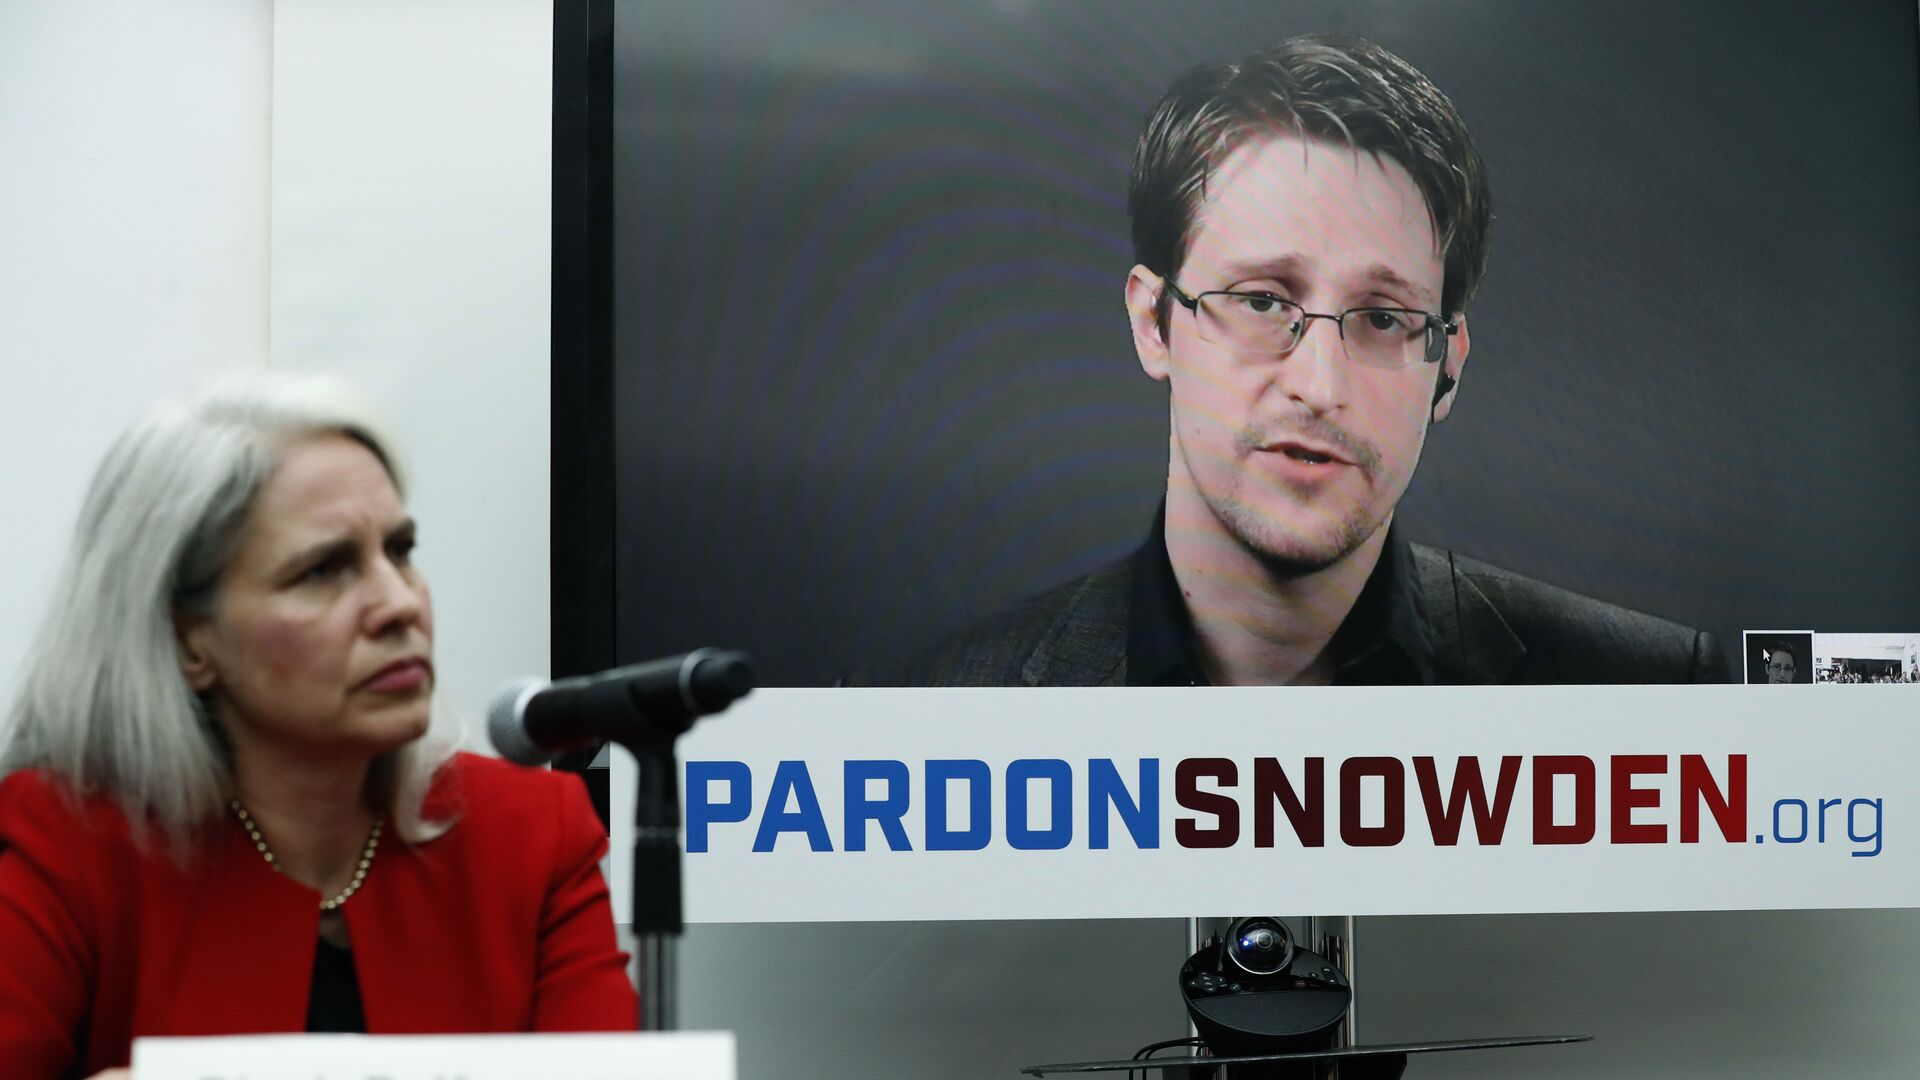 Экс-сотрудник американских спецслужб Эдвард Сноуден во время интерактивной видеоконференции. 14 сентября 2016 - РИА Новости, 1920, 30.09.2020